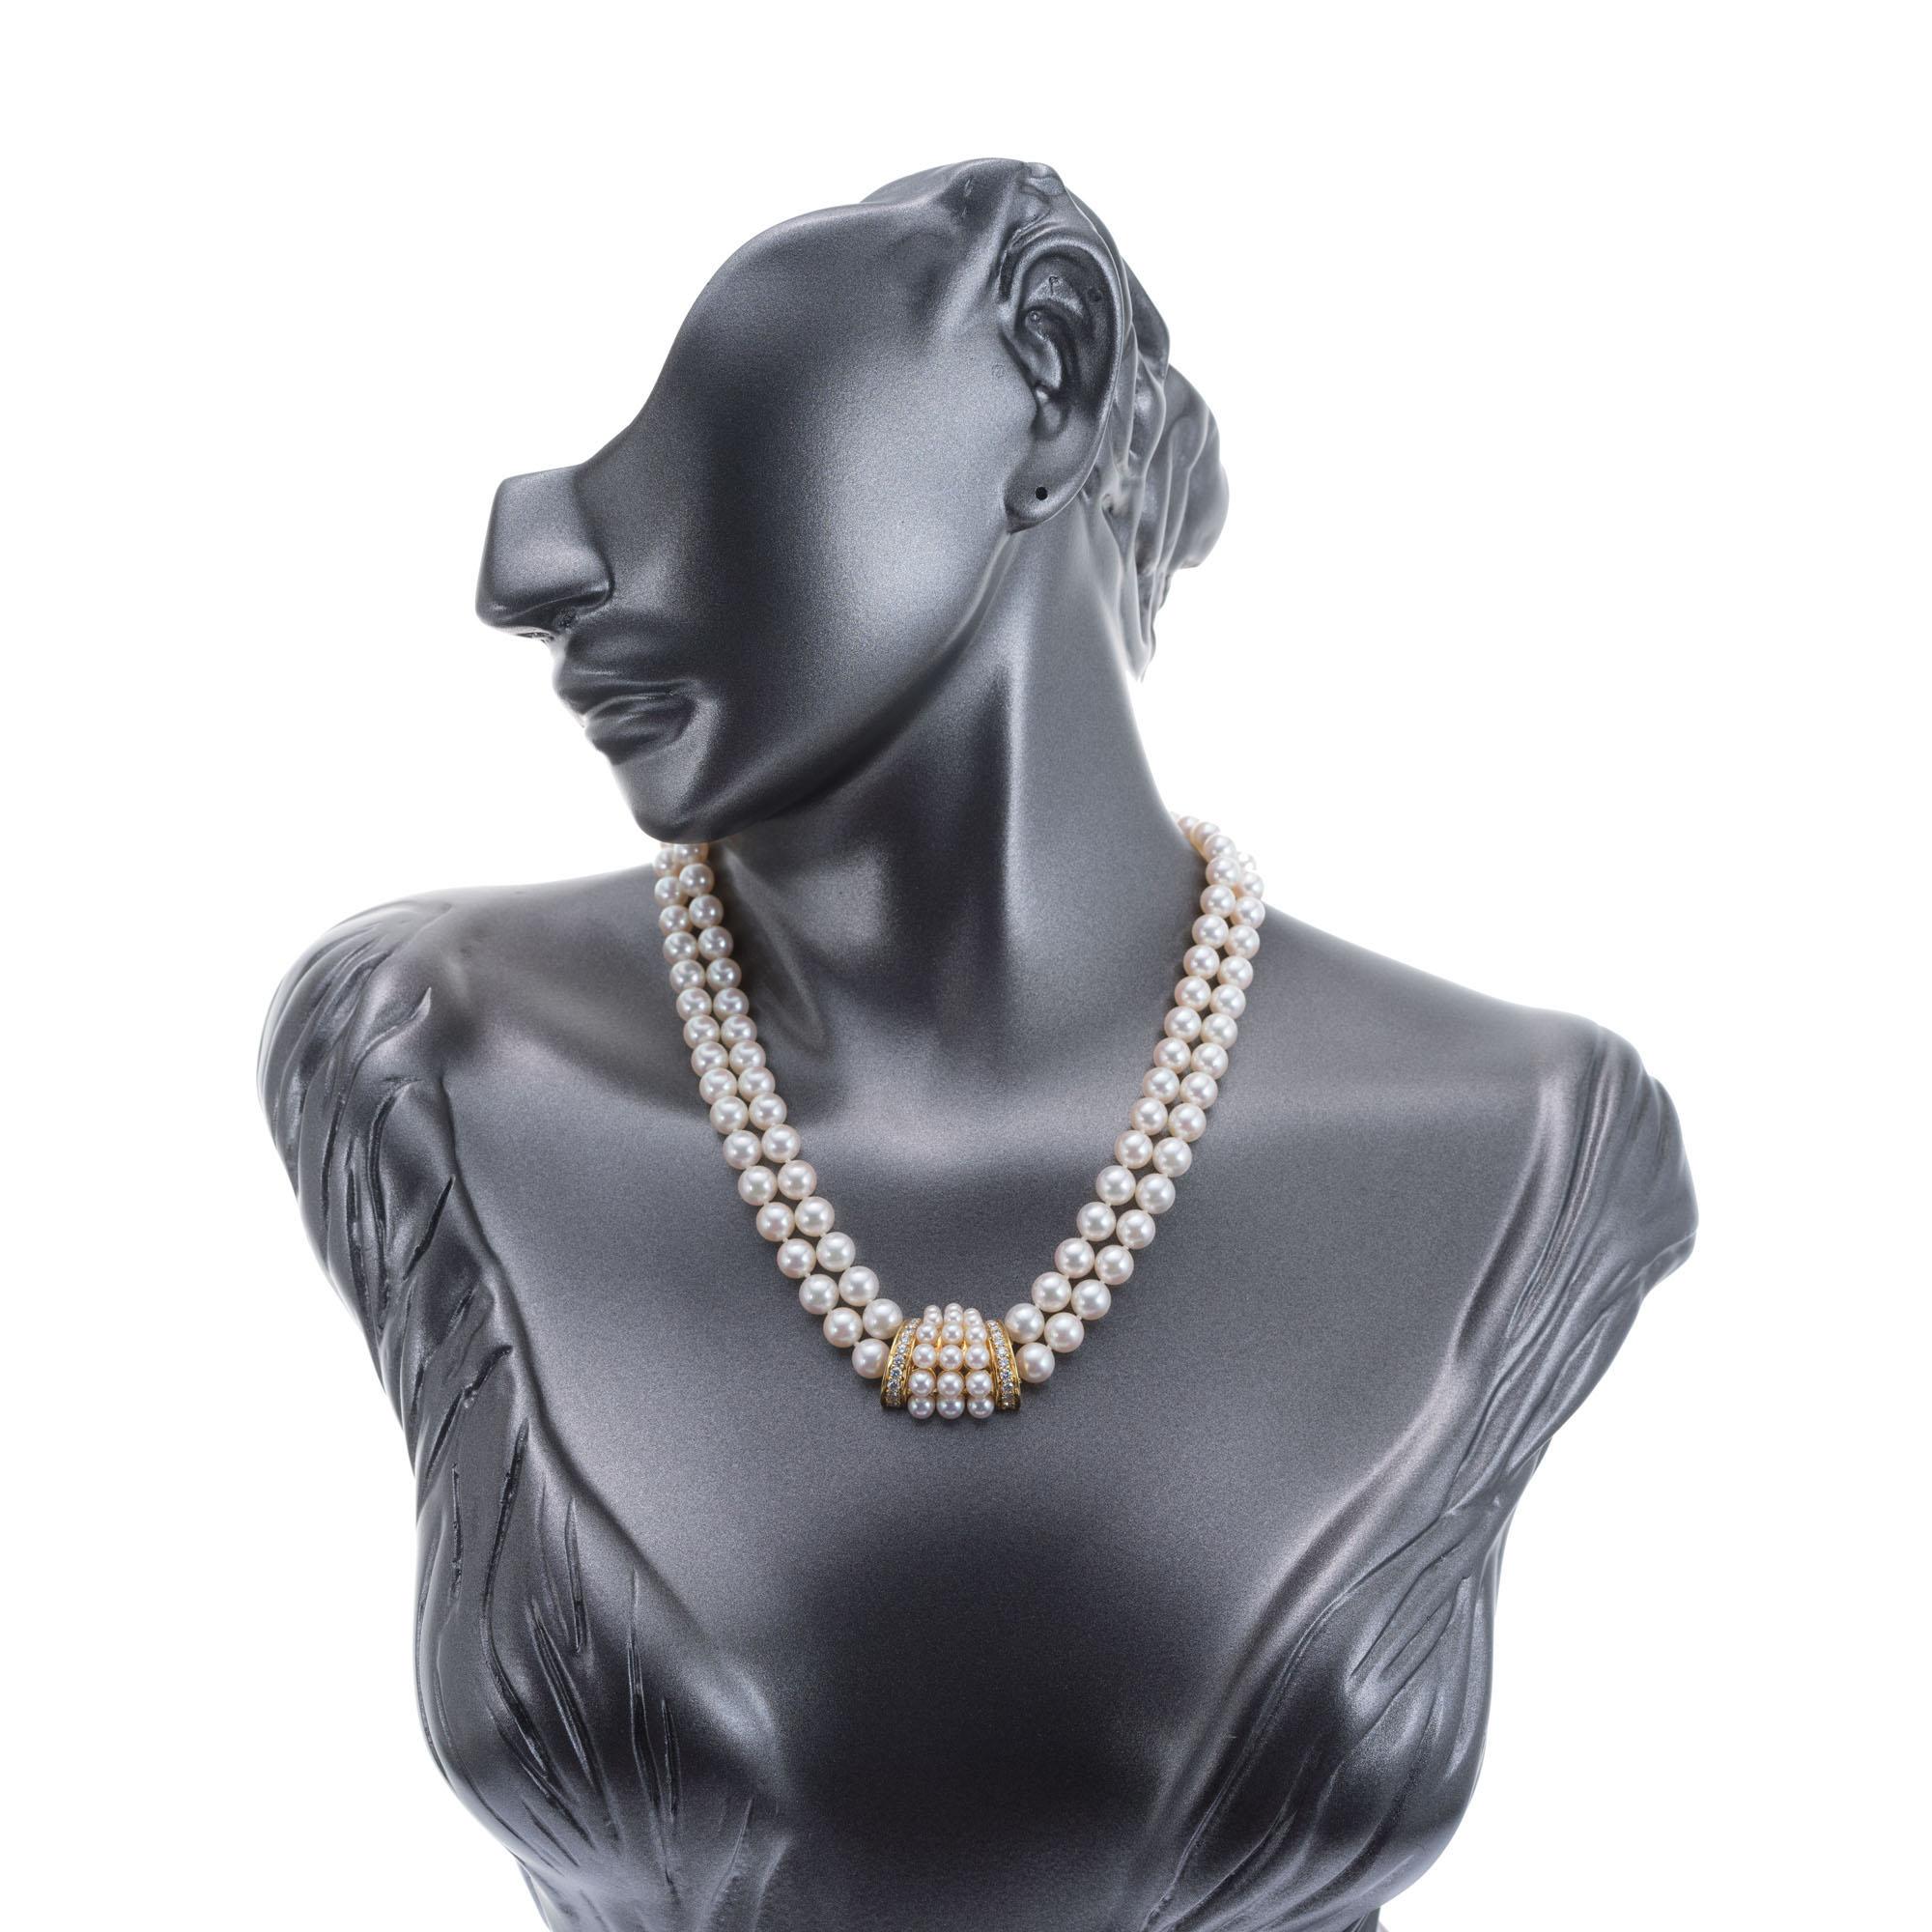 Authentique collier à double rang de perles de culture et de diamants certifié Mikimoto des années 1960. Perles de culture japonaises avec 22 diamants d'accentuation pleine taille. Longueur : 17-18 pouces. Évaluation et baguage à Mikimoto. Tampons